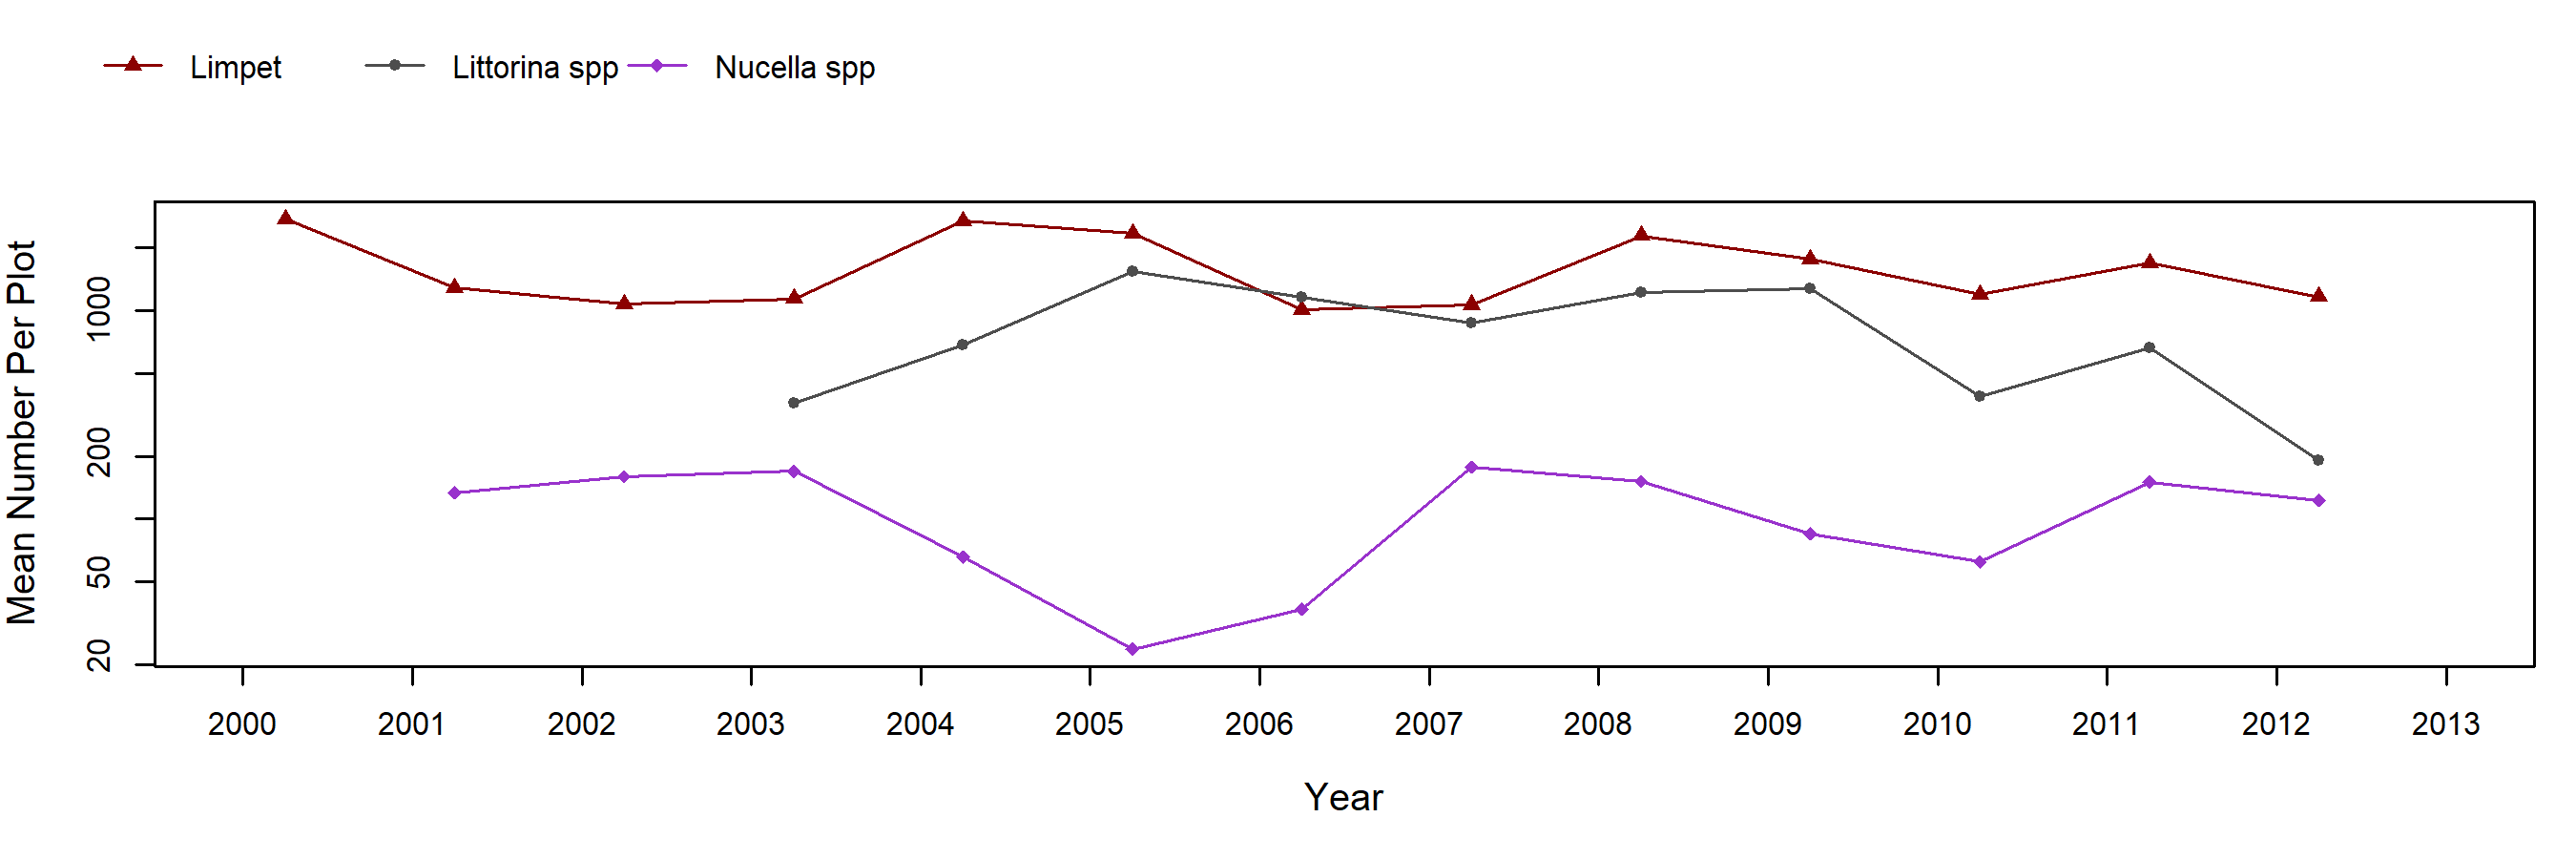 Bob Creek semibalanus trend plot